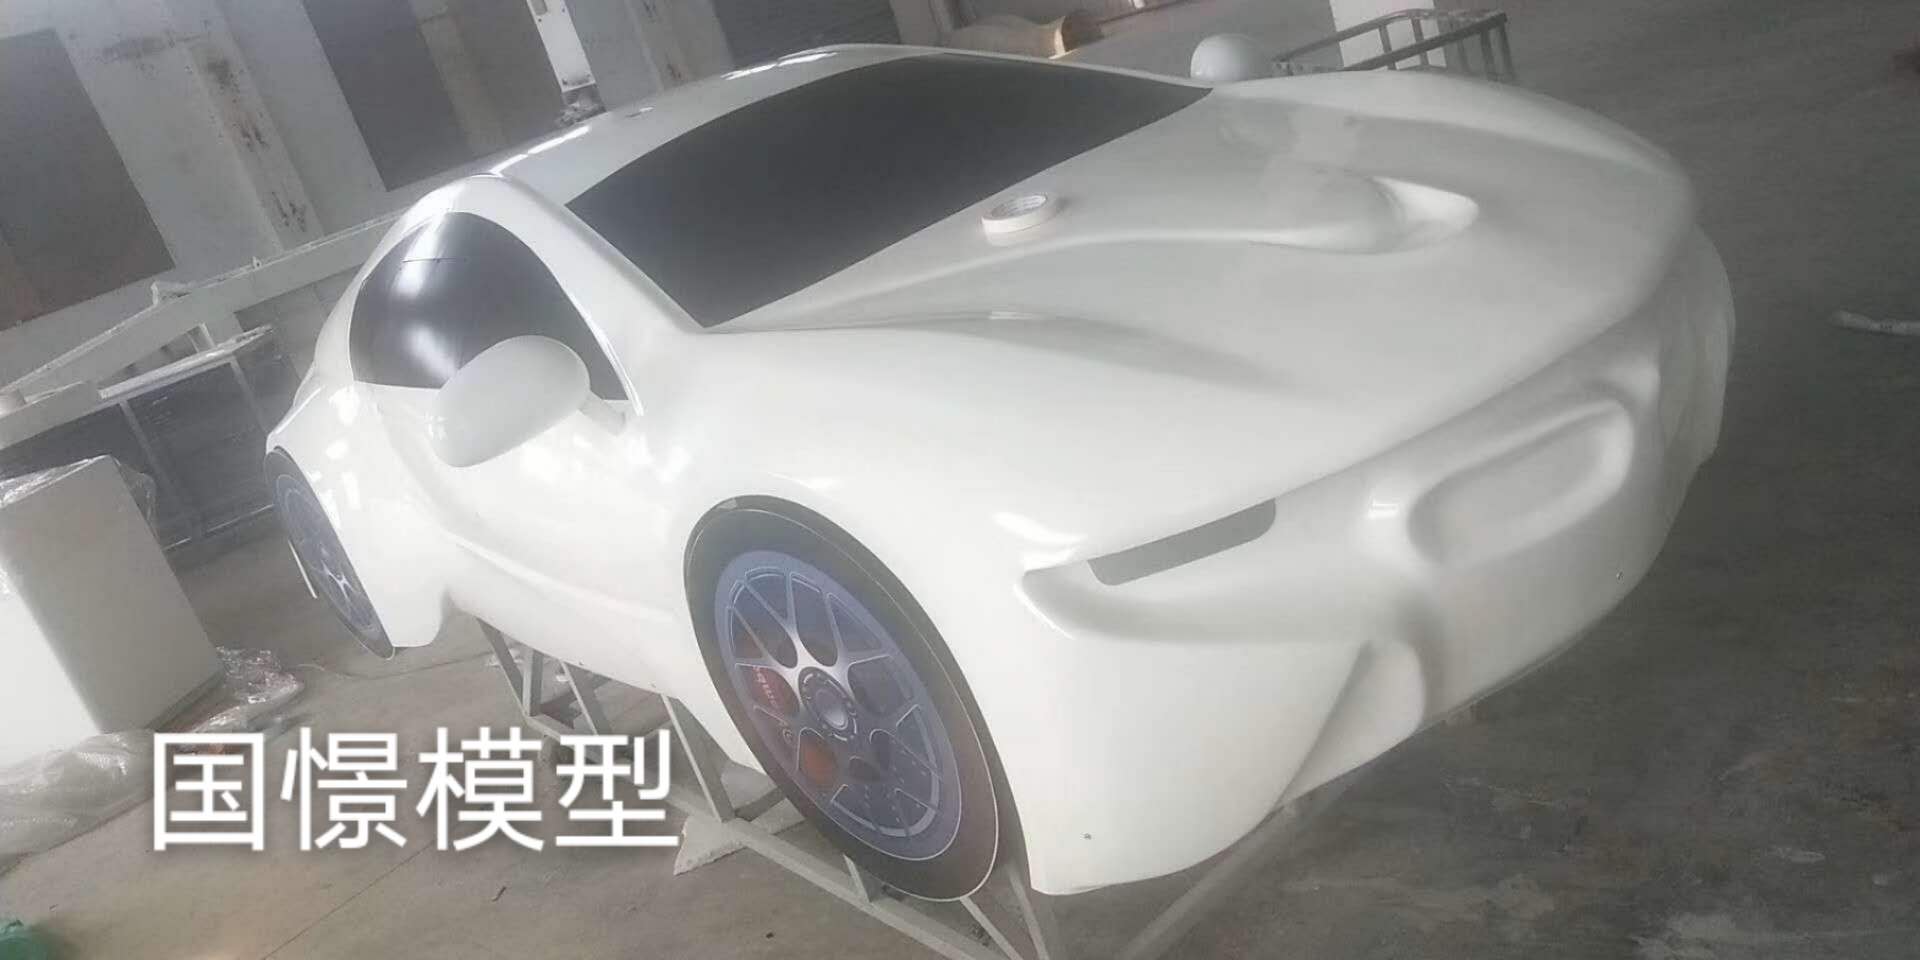 叶城县车辆模型